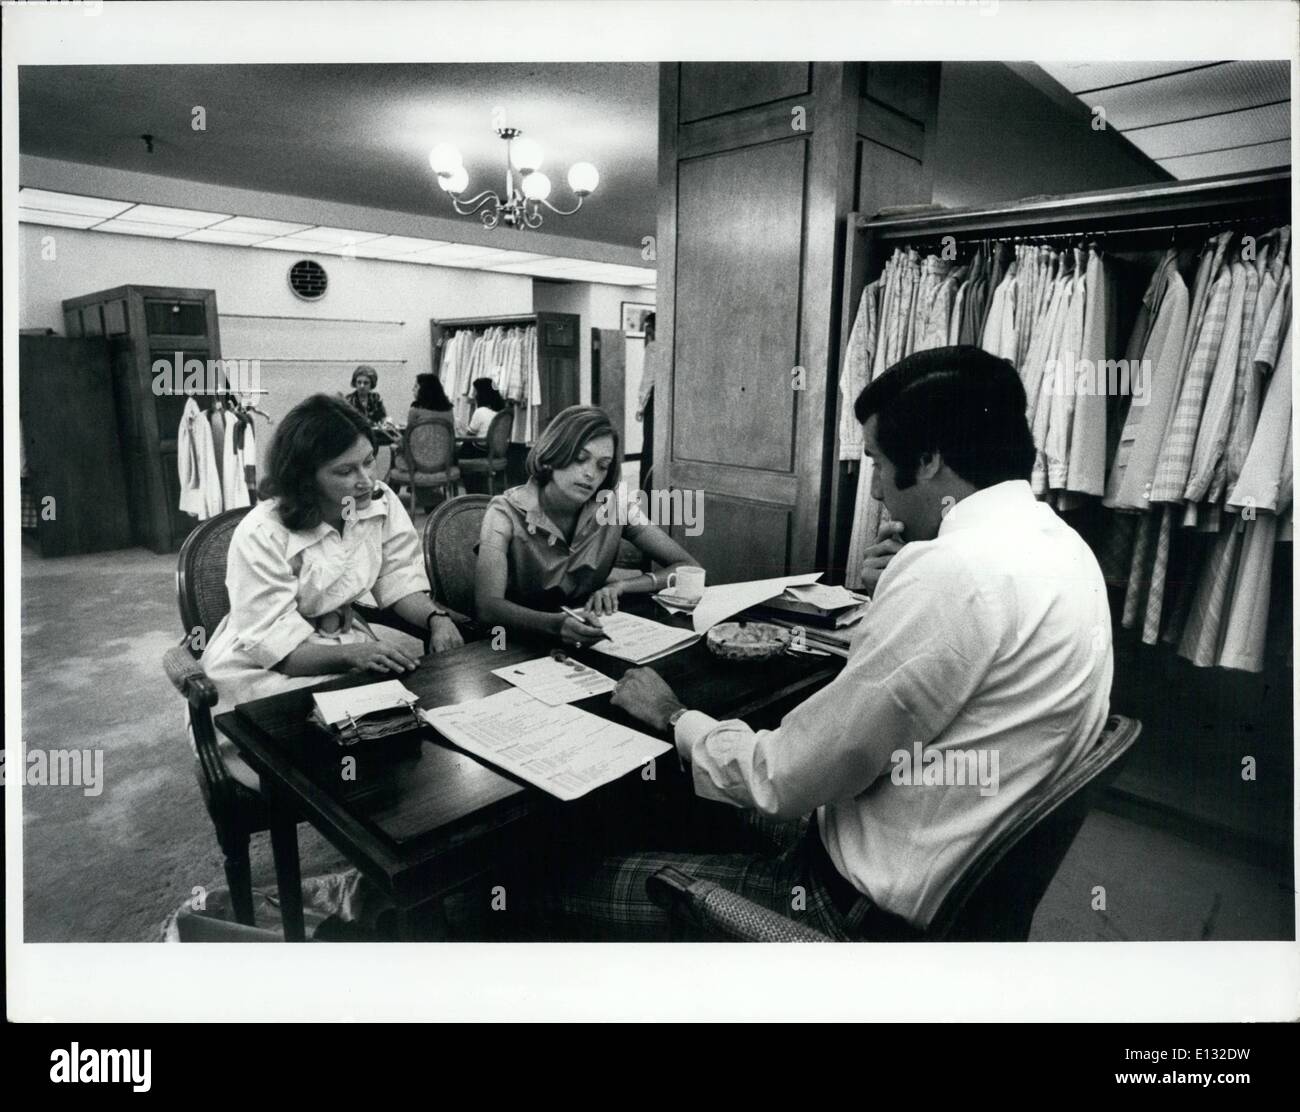 El 26 de febrero de 2012 - julio de 1975, un comprador de mercancías (centro) y su ayudante (izquierda), de una importante Nueva York department store, prendas de Evan-Picone pedidos, una división de Deva International en la séptima avenida, en la Ciudad de Nueva York. Foto de stock